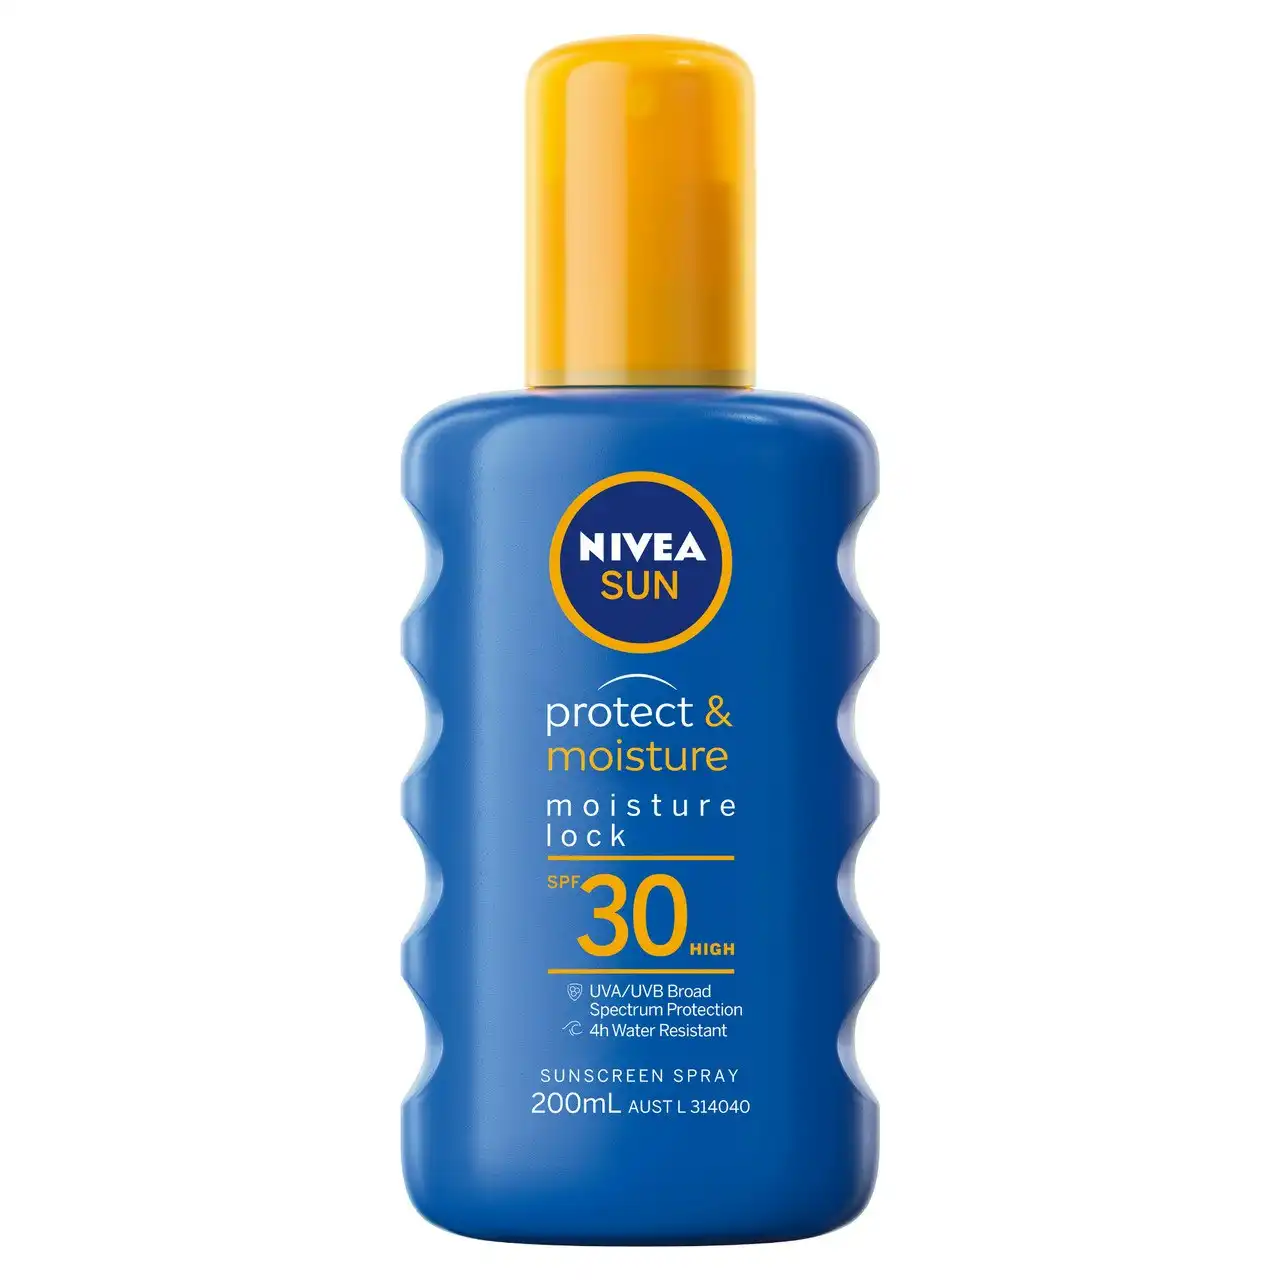 Nivea Protect & Moisture Moisture Lock SPF30 Sunscreen Spray